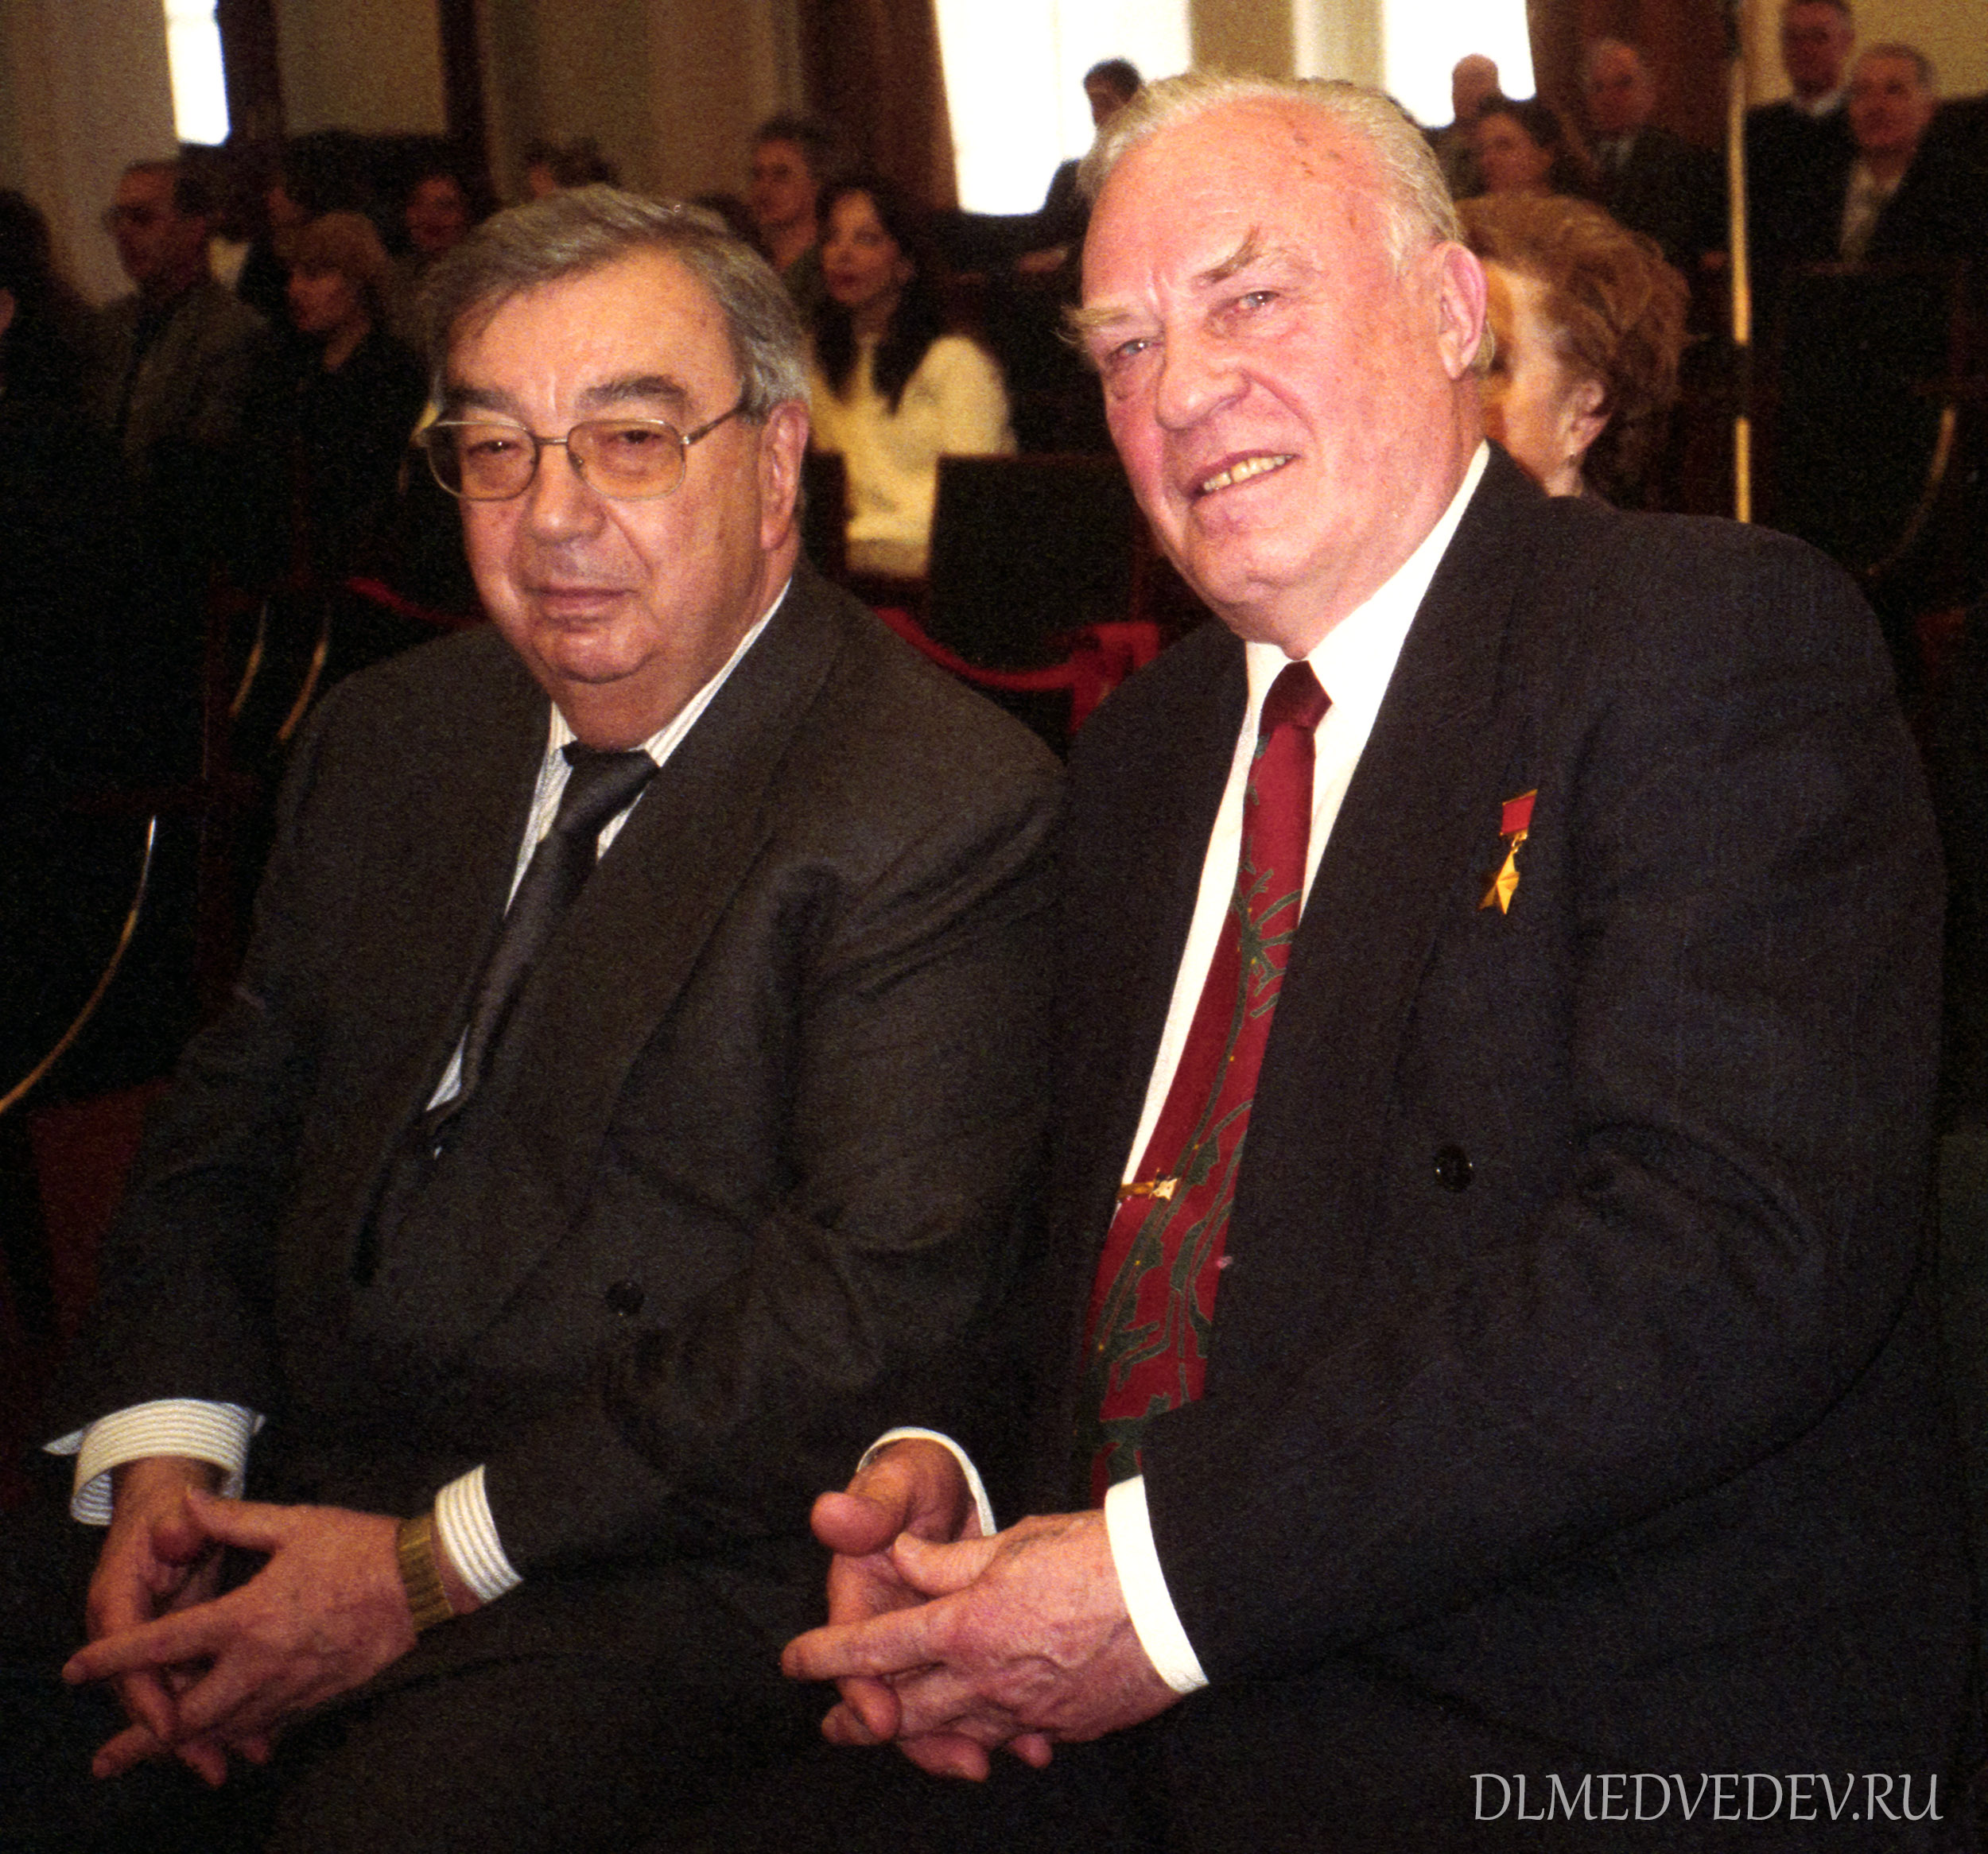 Портрет Евгения Максимовича Примакова и Владимир Николаевич Чернавин, фото Льва Медведева